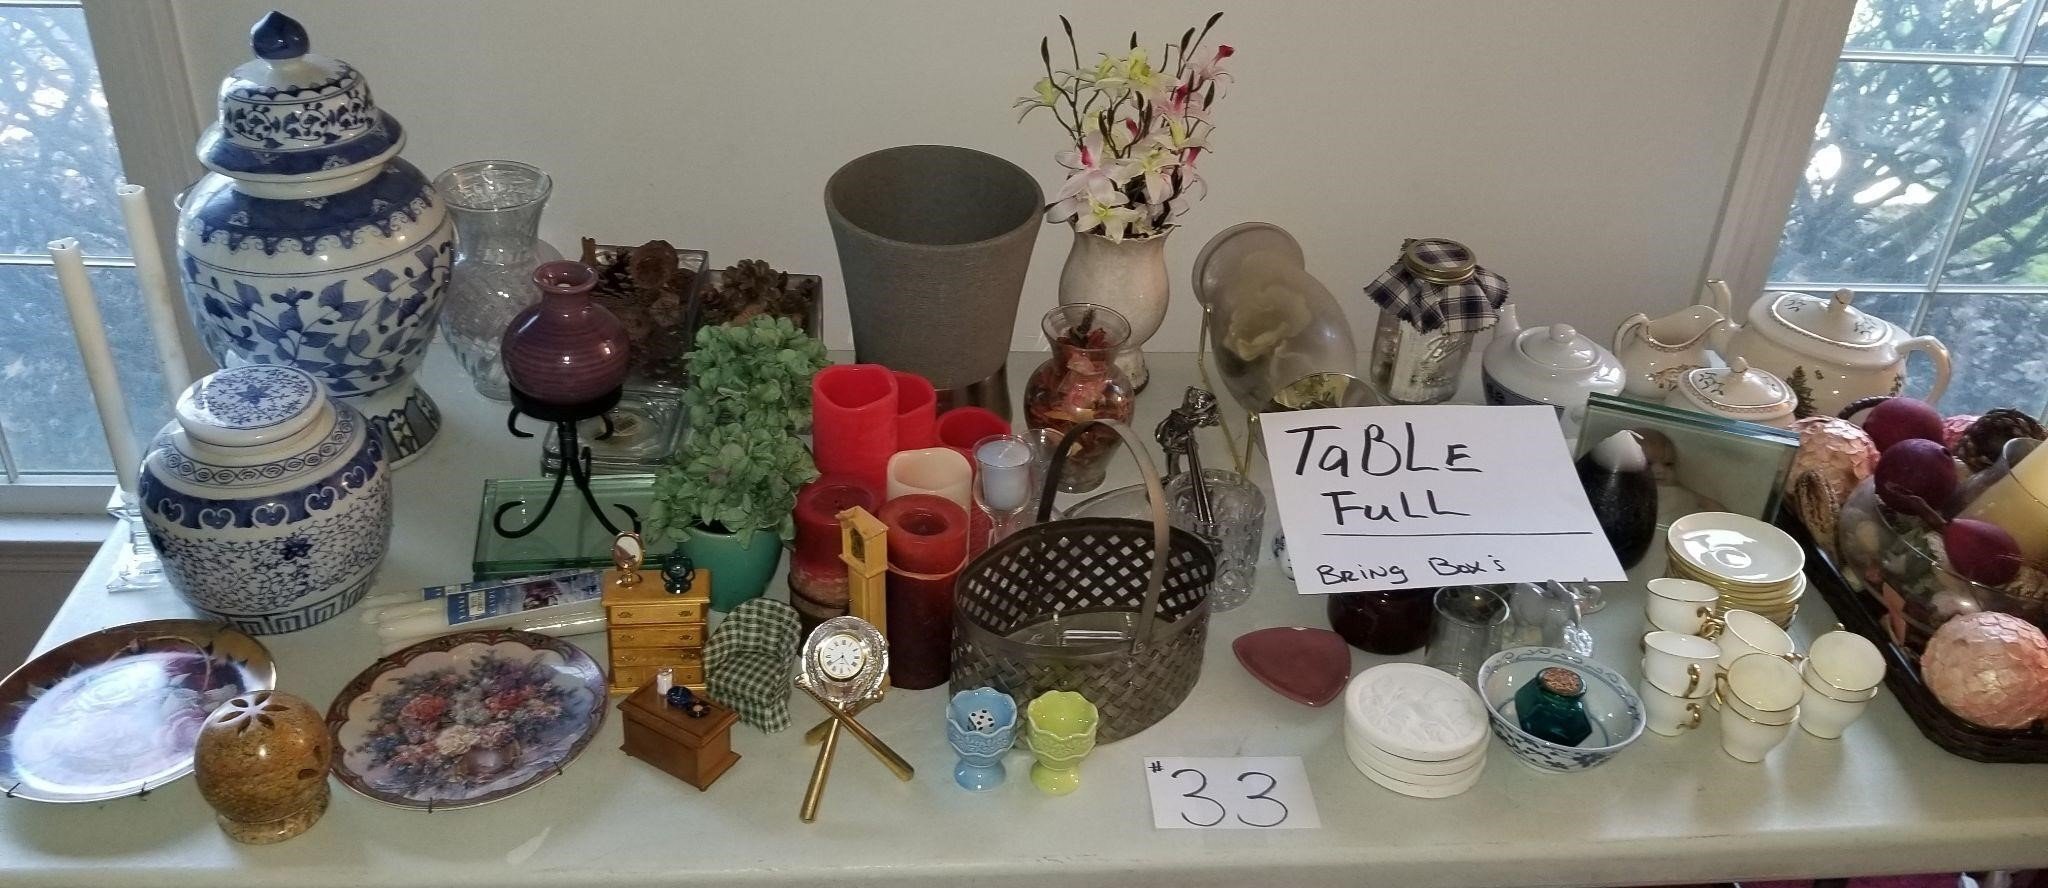 Table Full-Home Décor Items